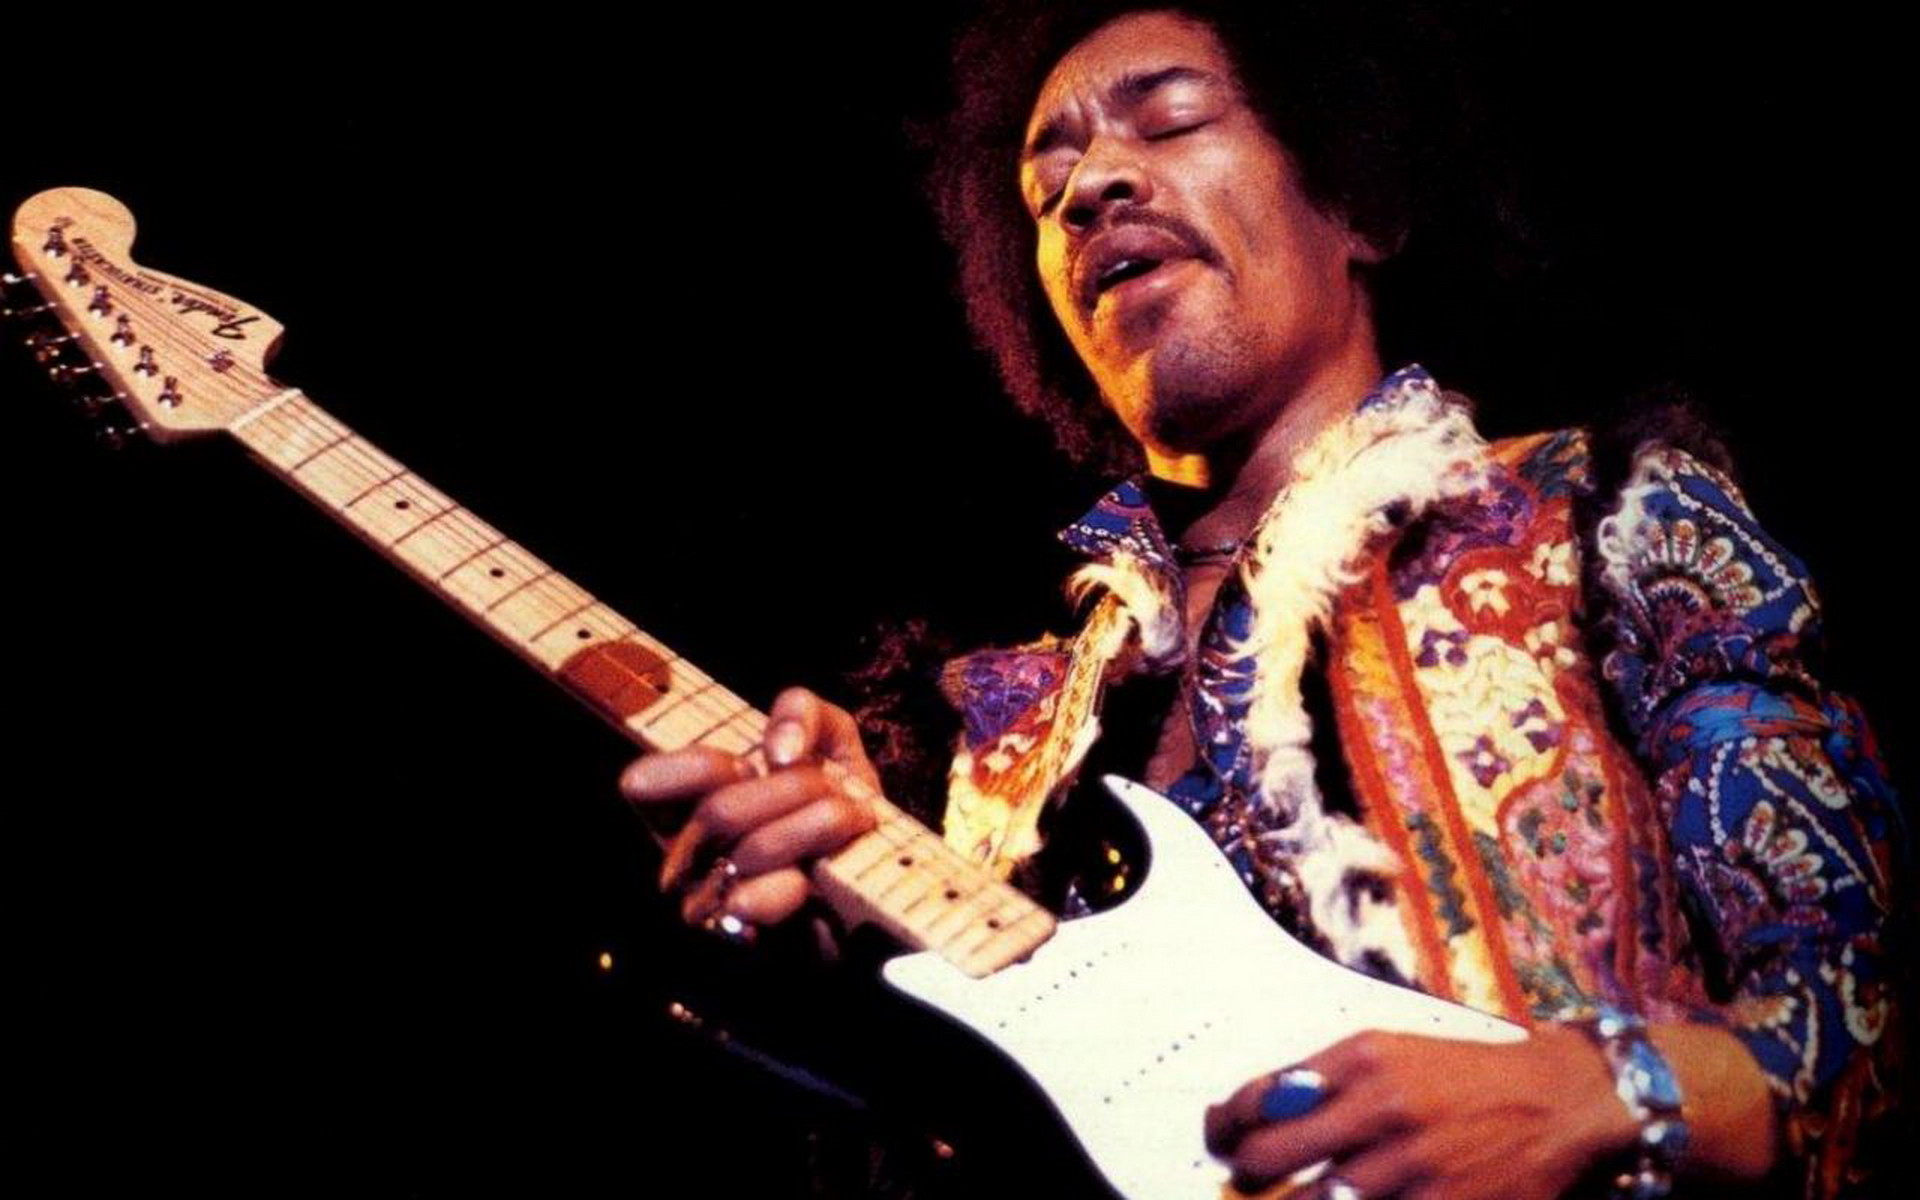 Hd Jimi Hendrix Wallpapers Download Free - Jimi Hendrix - HD Wallpaper 